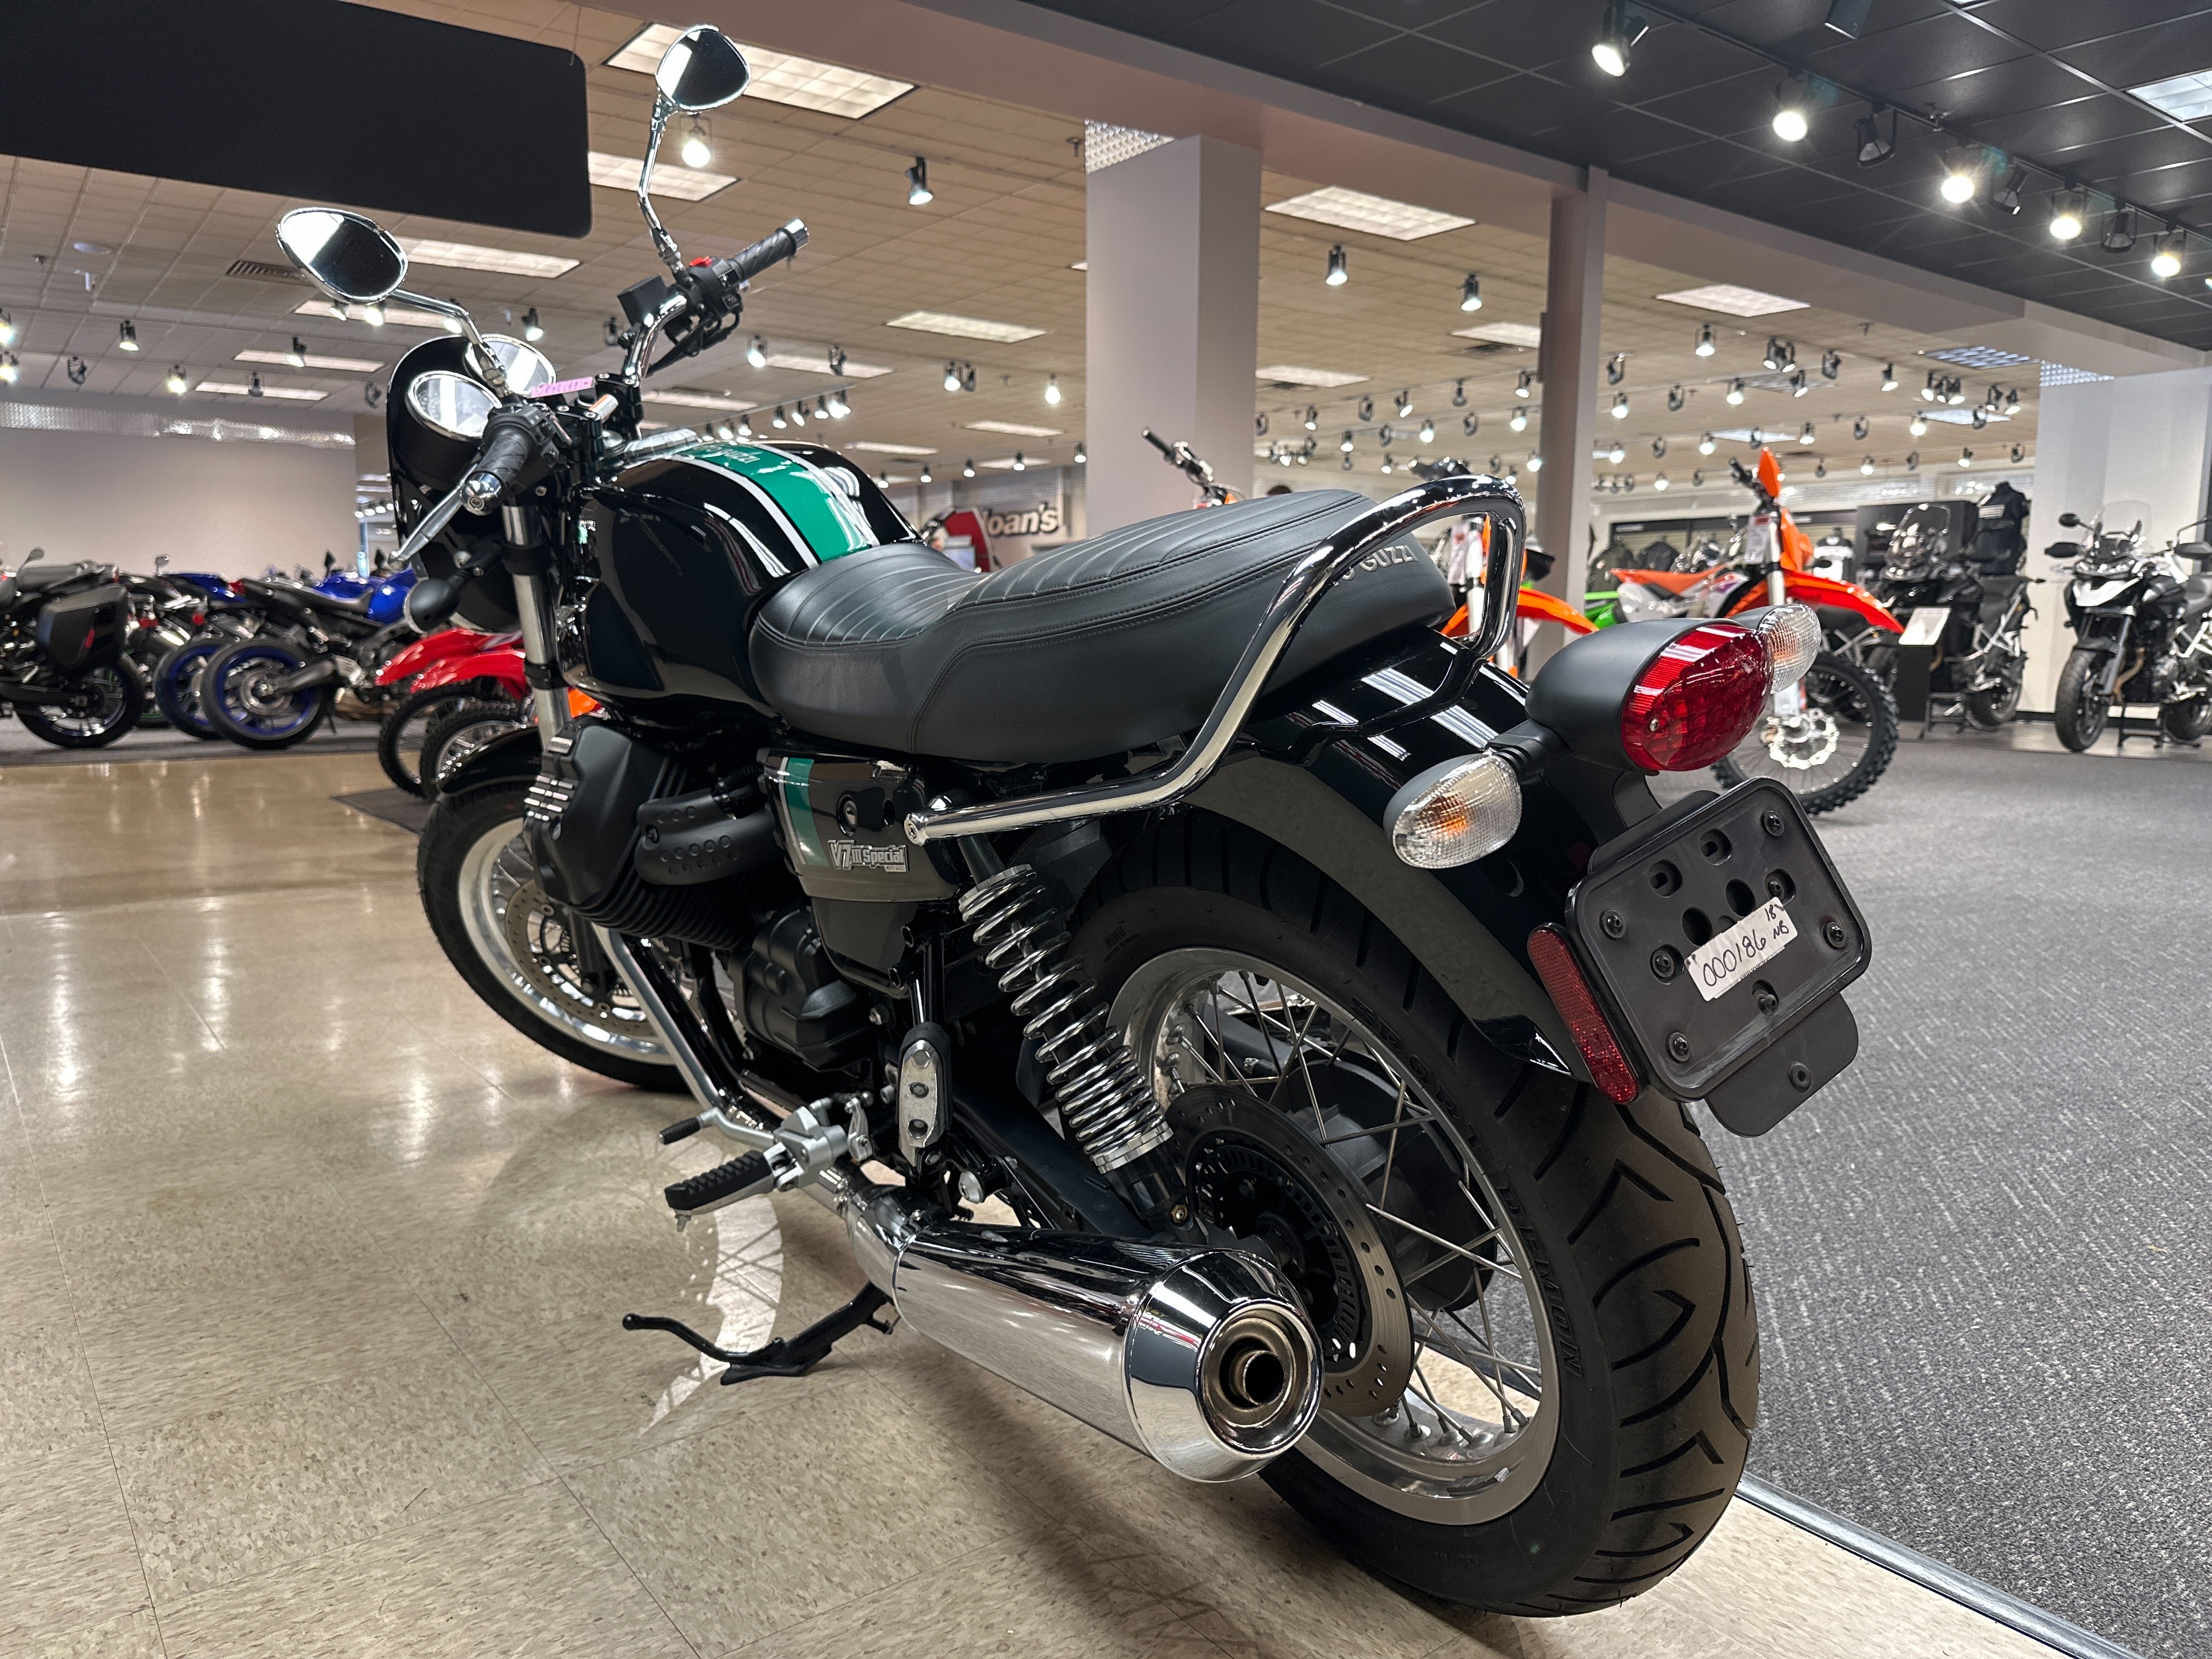 2018 Moto Guzzi V7 III Special at Sloans Motorcycle ATV, Murfreesboro, TN, 37129